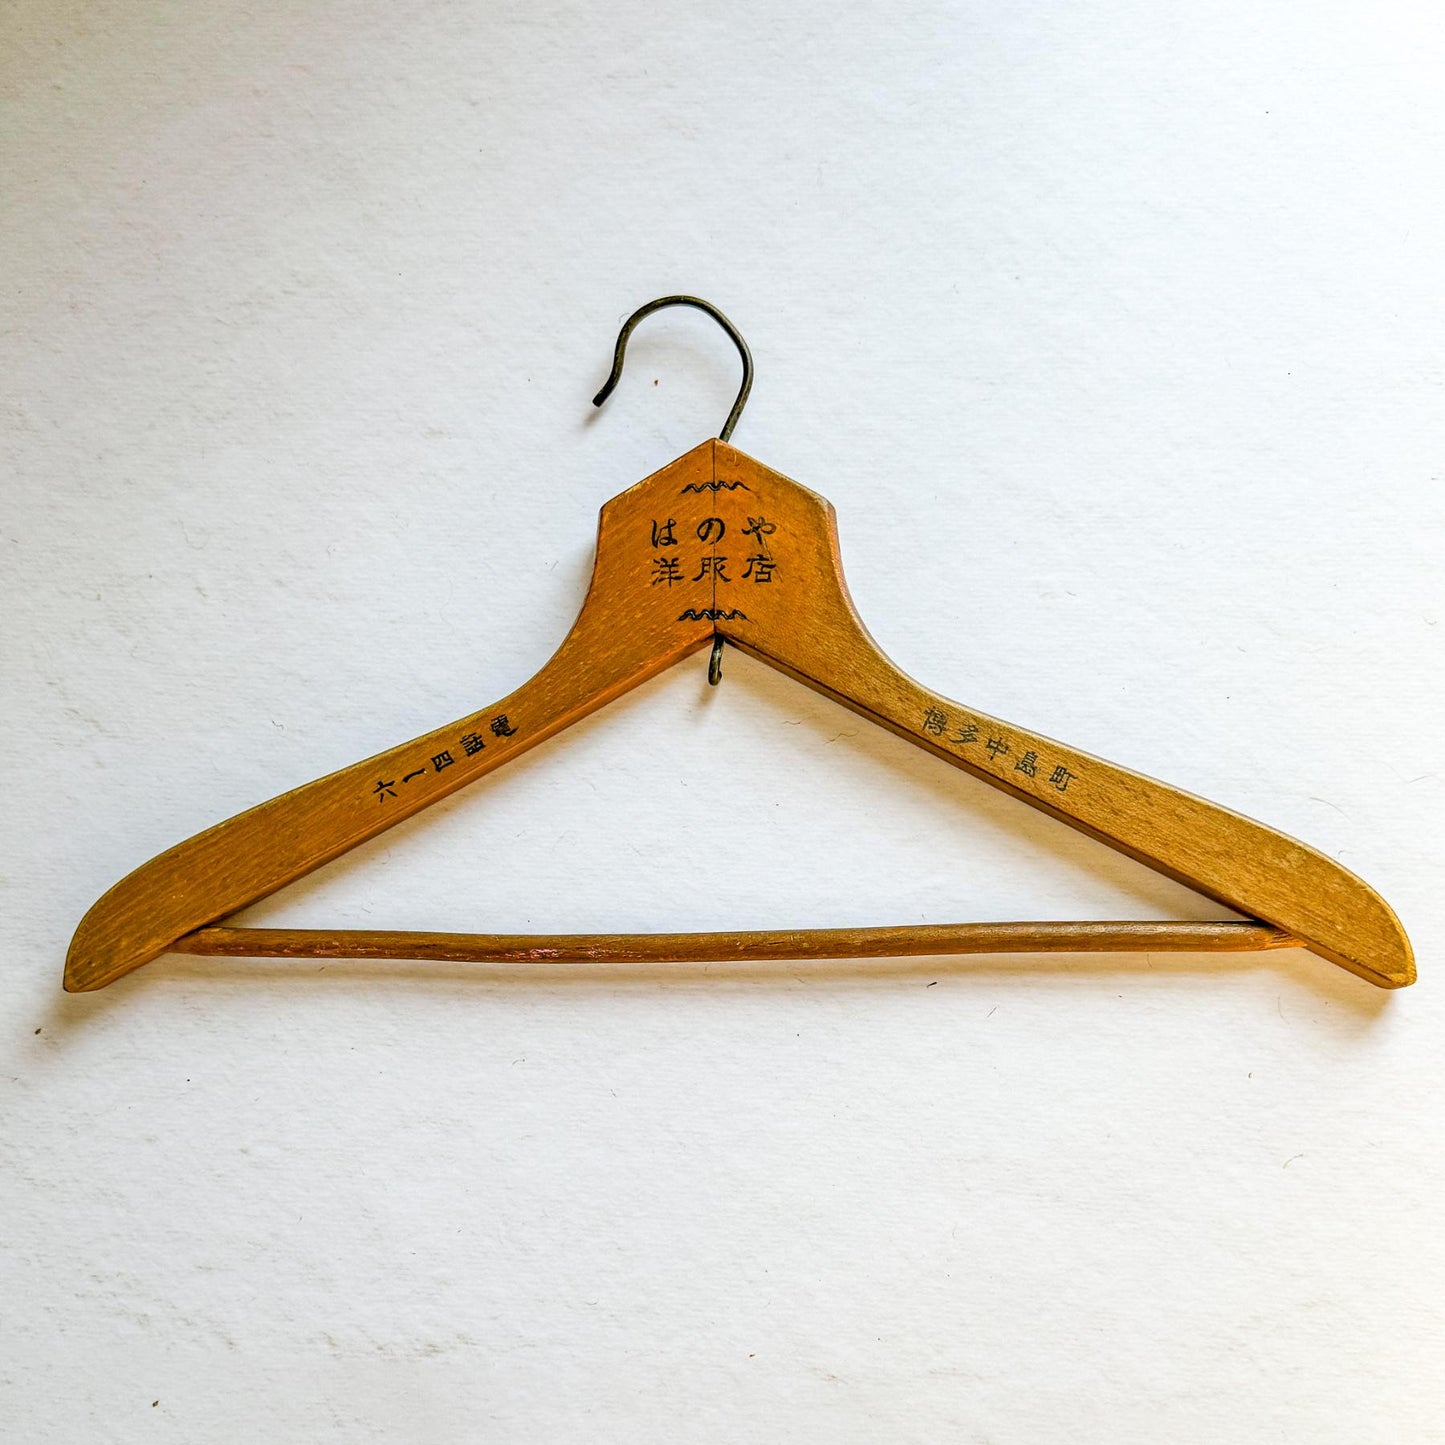 Japanese Vintage Hanger